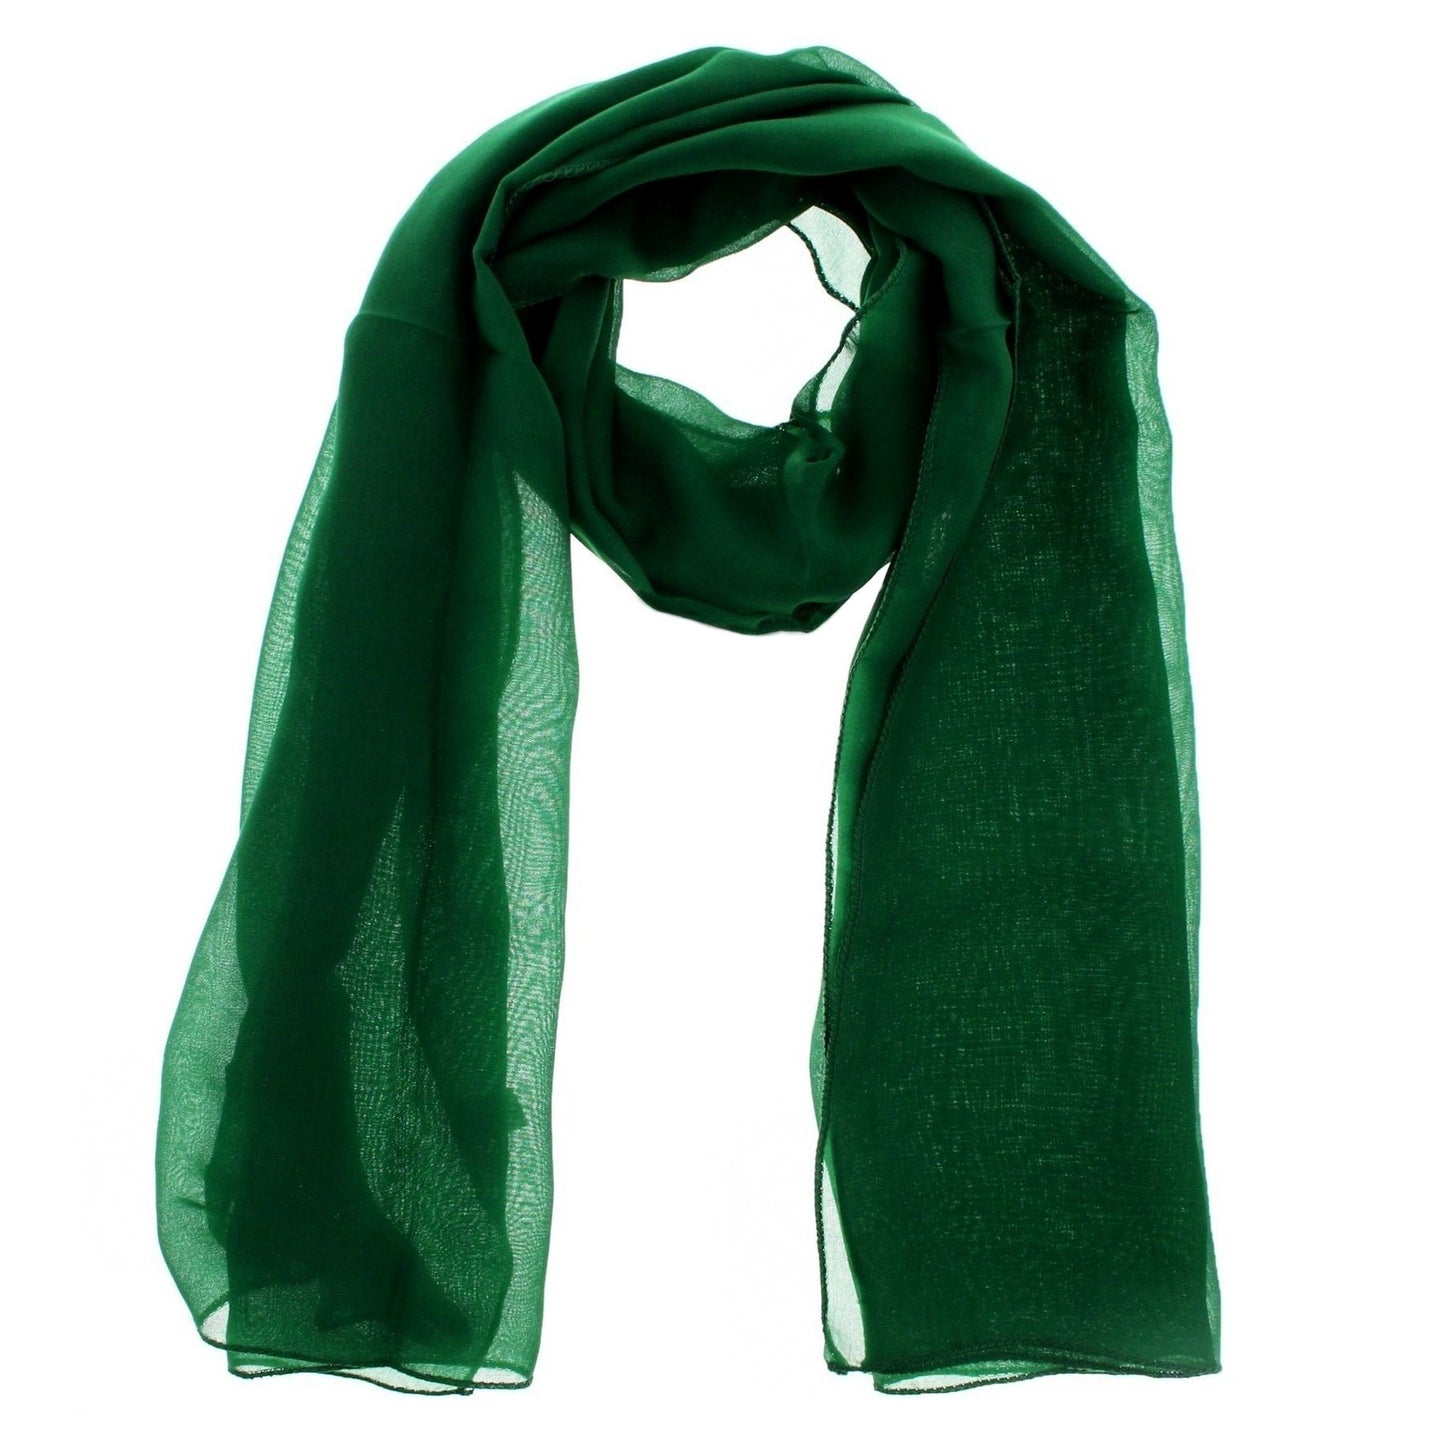 Chiffon scarf 180 x 70 cm by WESTEND CHOICE Scarves & Shawls all scarves, chiffon scarves, plain chiffon scarves, women